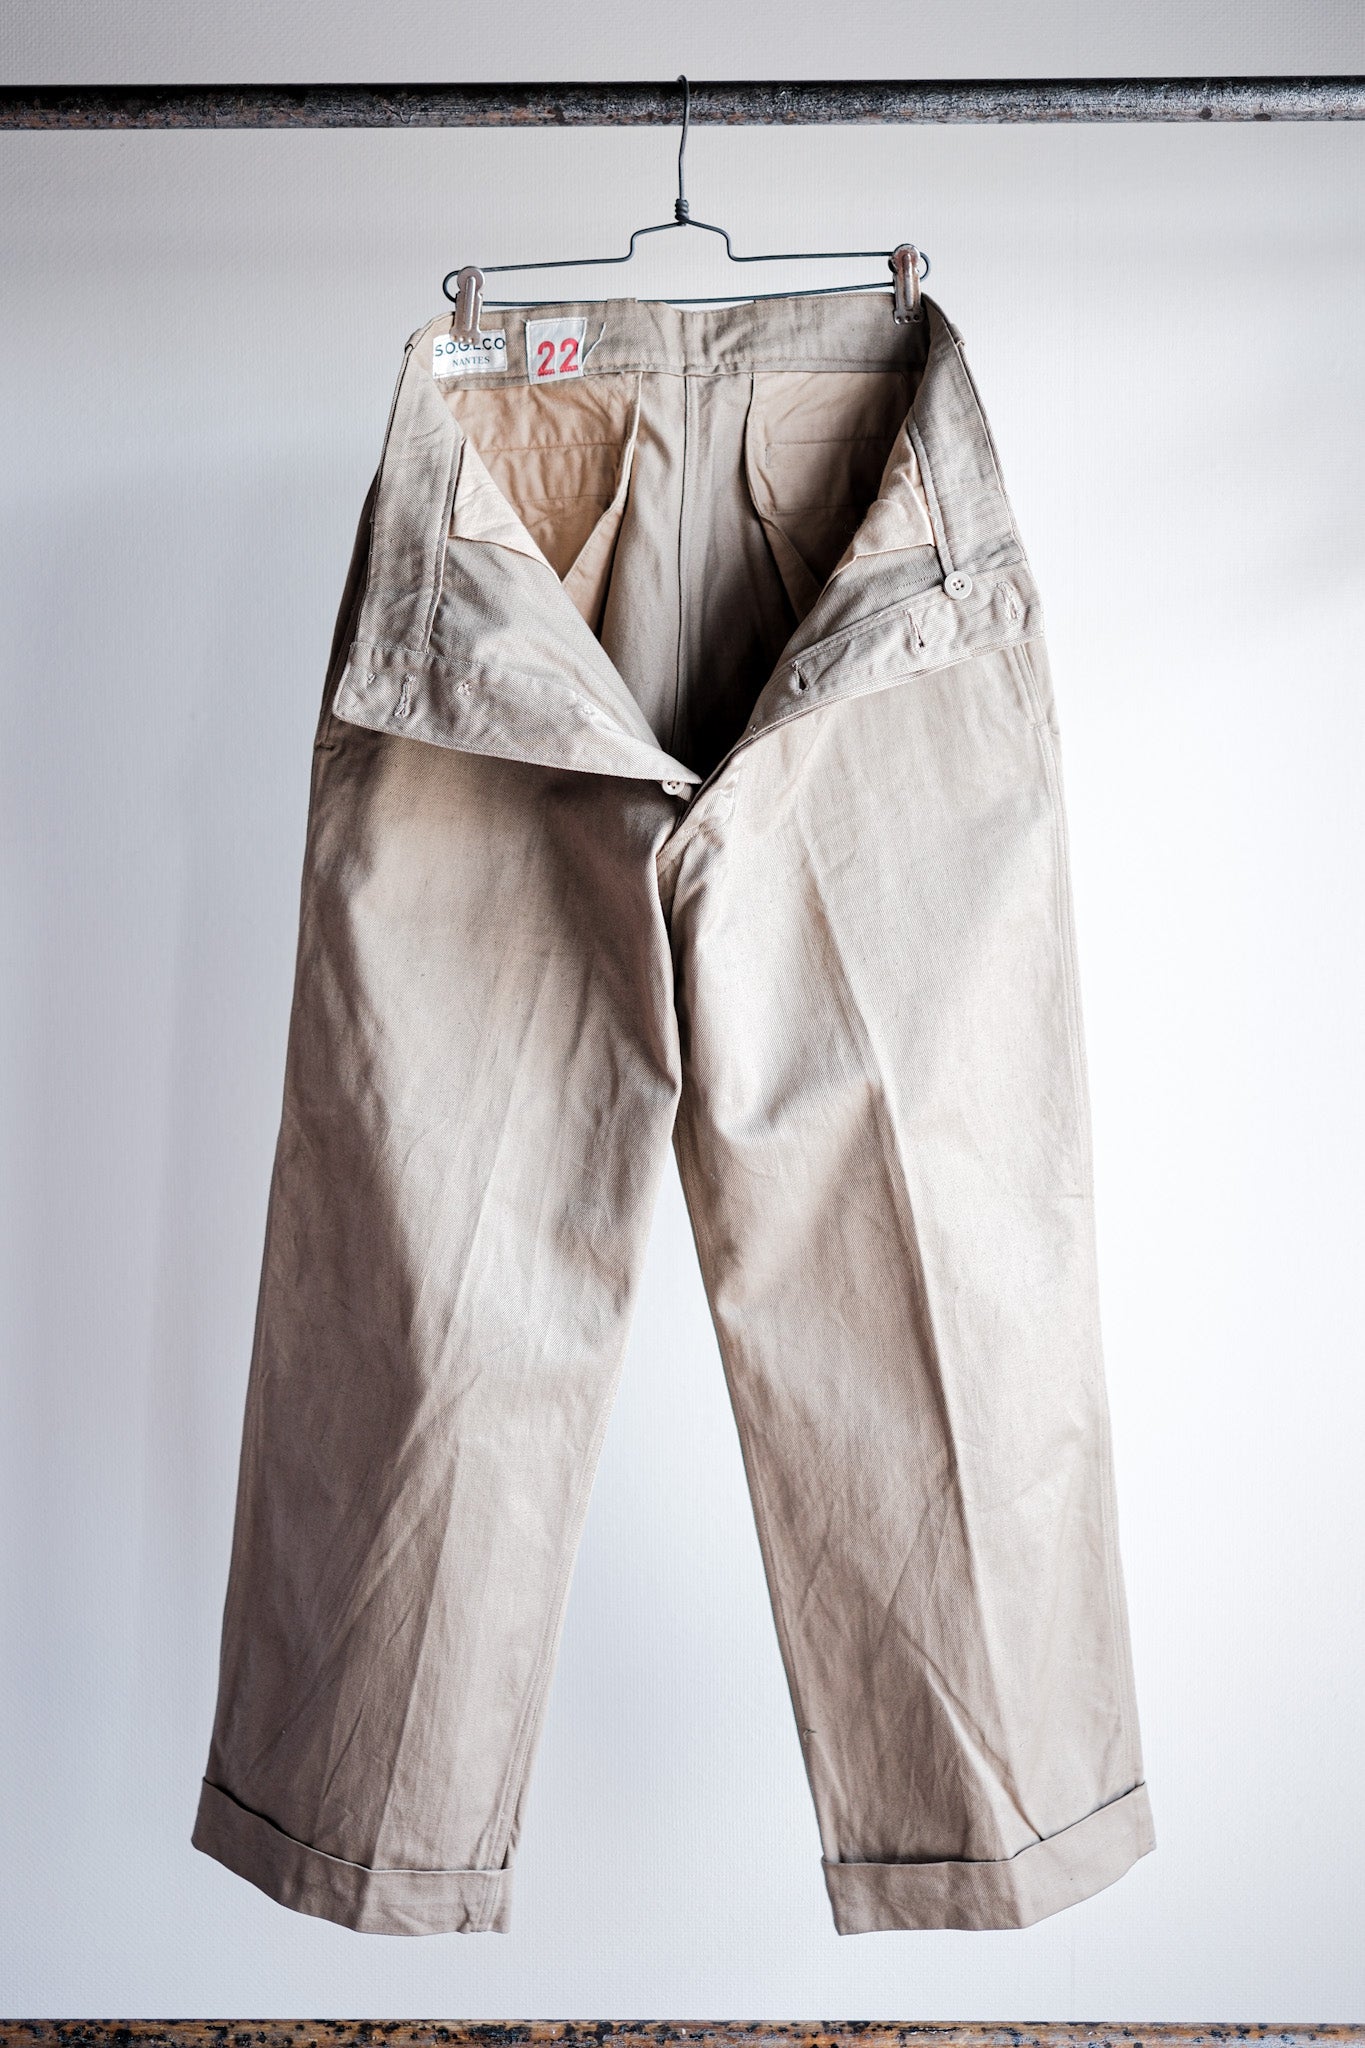 [~ 60's] Taille des pantalons chino de l'armée française M52.22 "Stock mort"